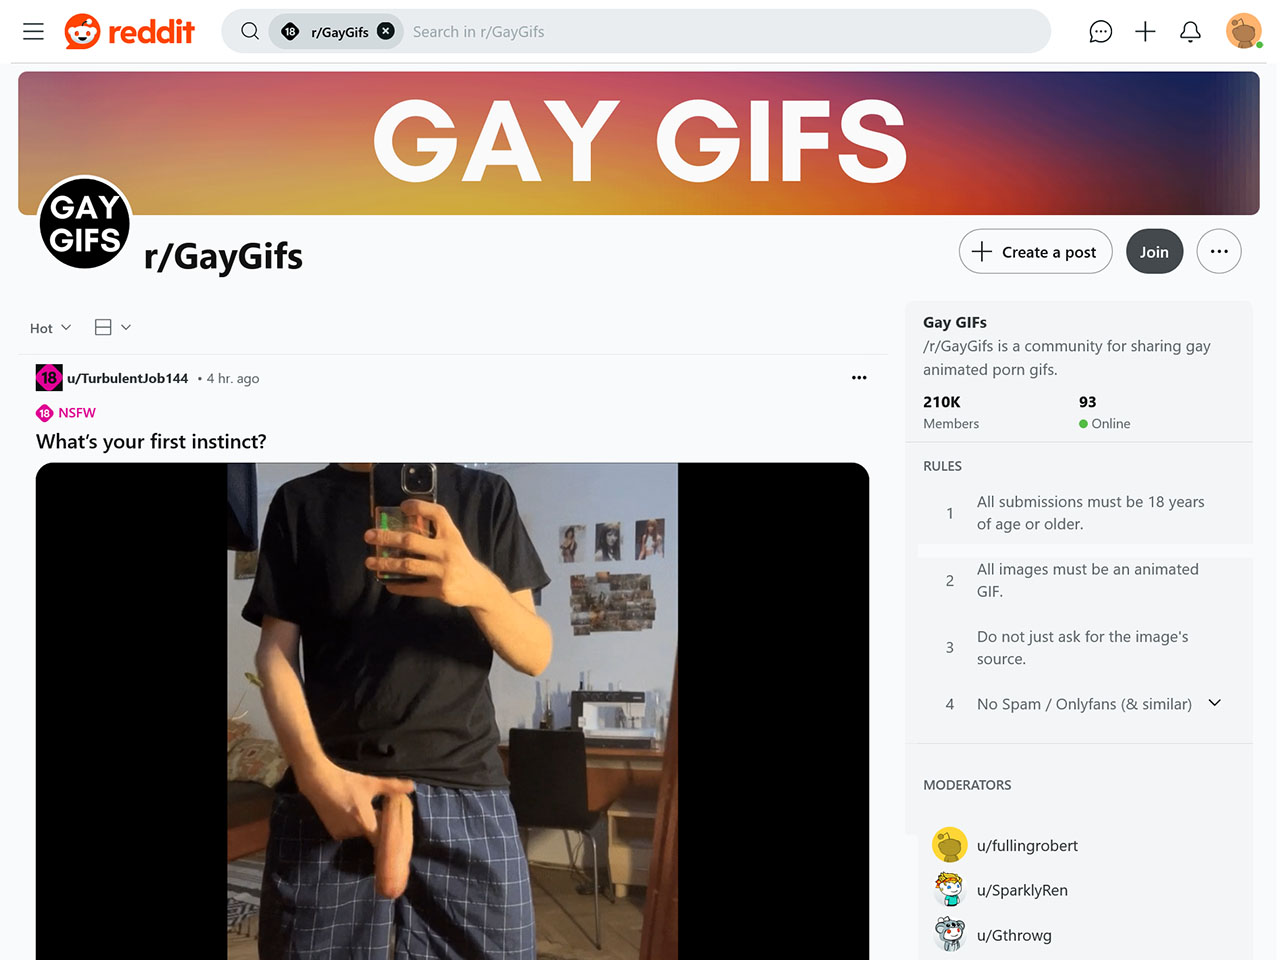 r/GayGifs